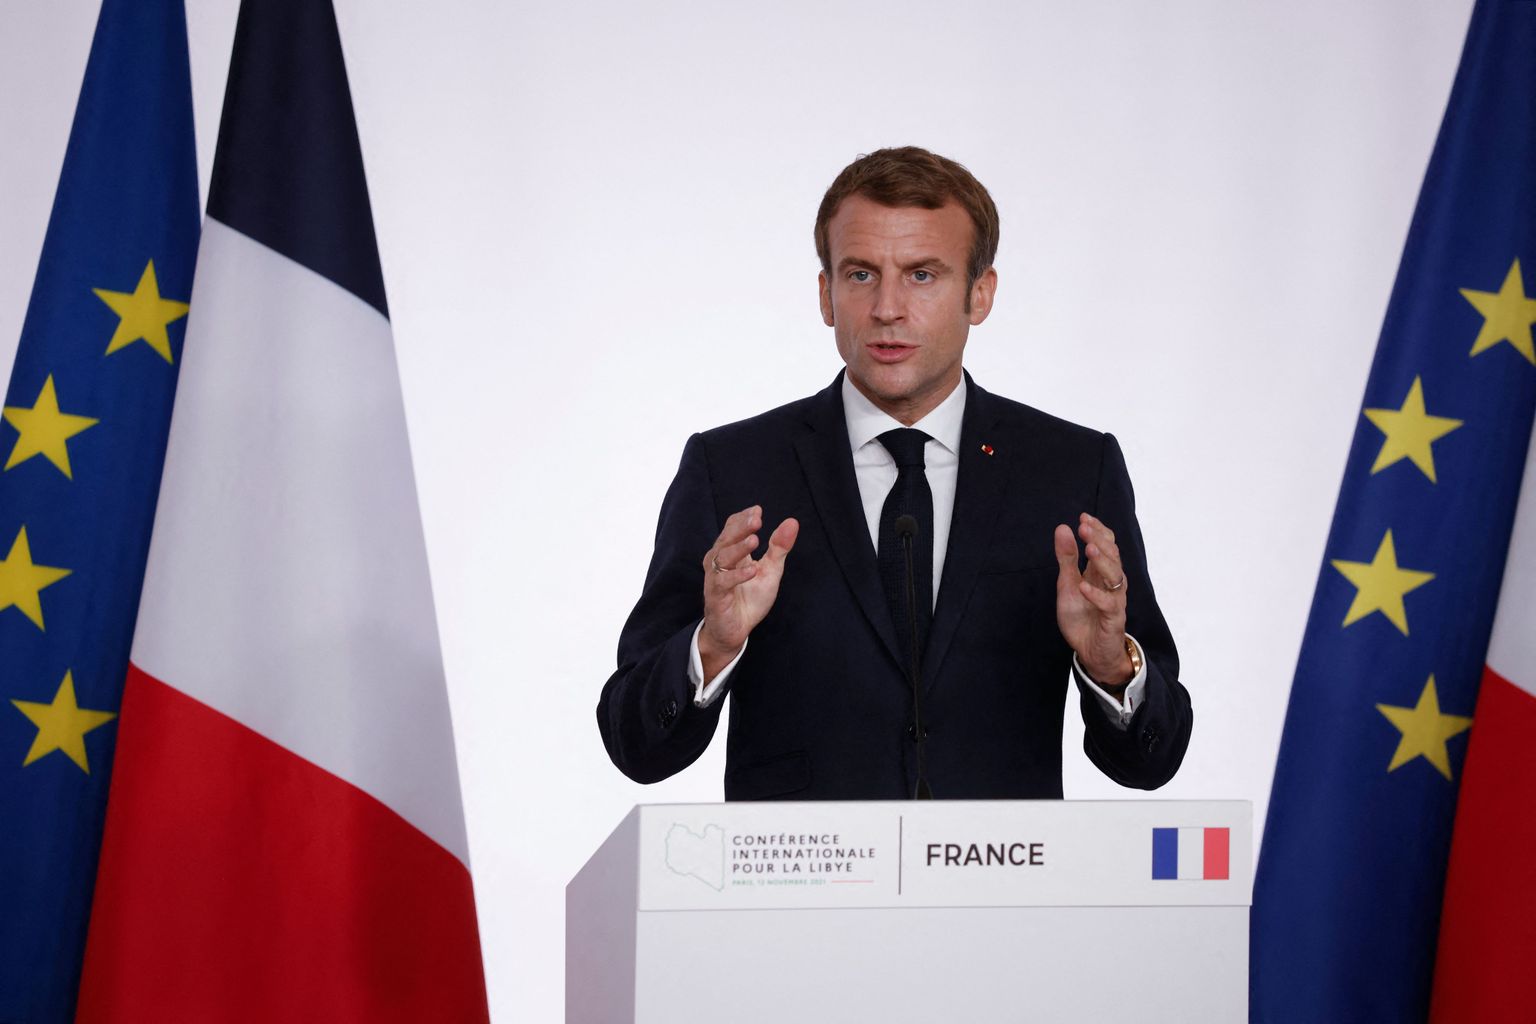 Prantsuse president Emmanuel Macron rääkimas Liibüa-teemalise konverentsi pressikonverentsil 12. novembril 2021 Pariisis. Ta kõrval on näha Prantsusmaa ja Euroopa Liidu lippe